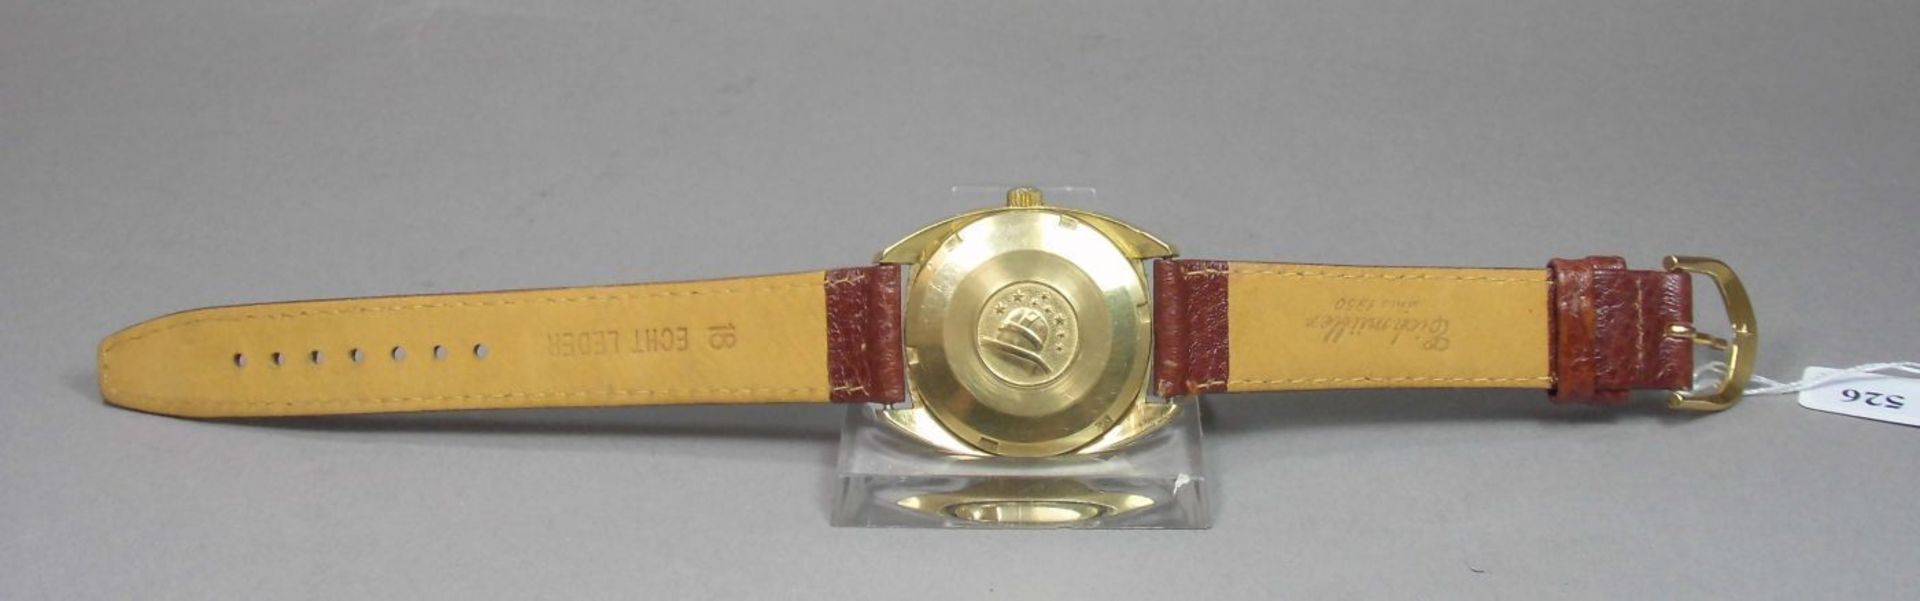 VINTAGE ARMBANDUHR: OMEGA CONSTELLATION / wristwatch, Herstellungsjahr 1968, Automatik-Uhr, - Bild 7 aus 11